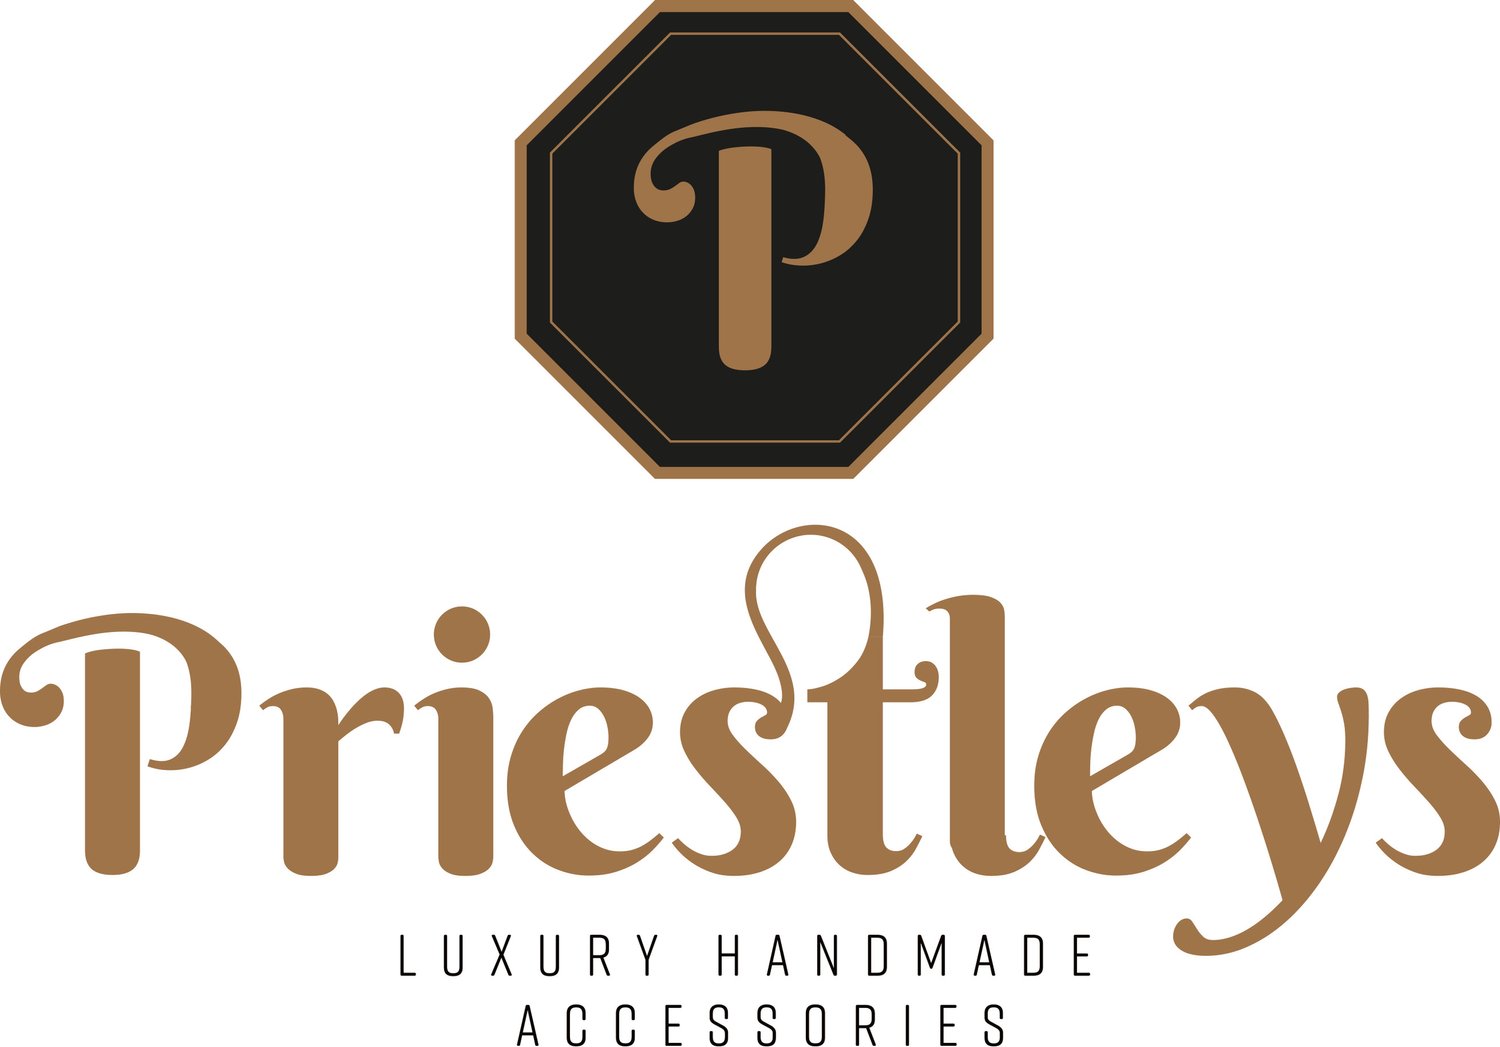 Priestleys